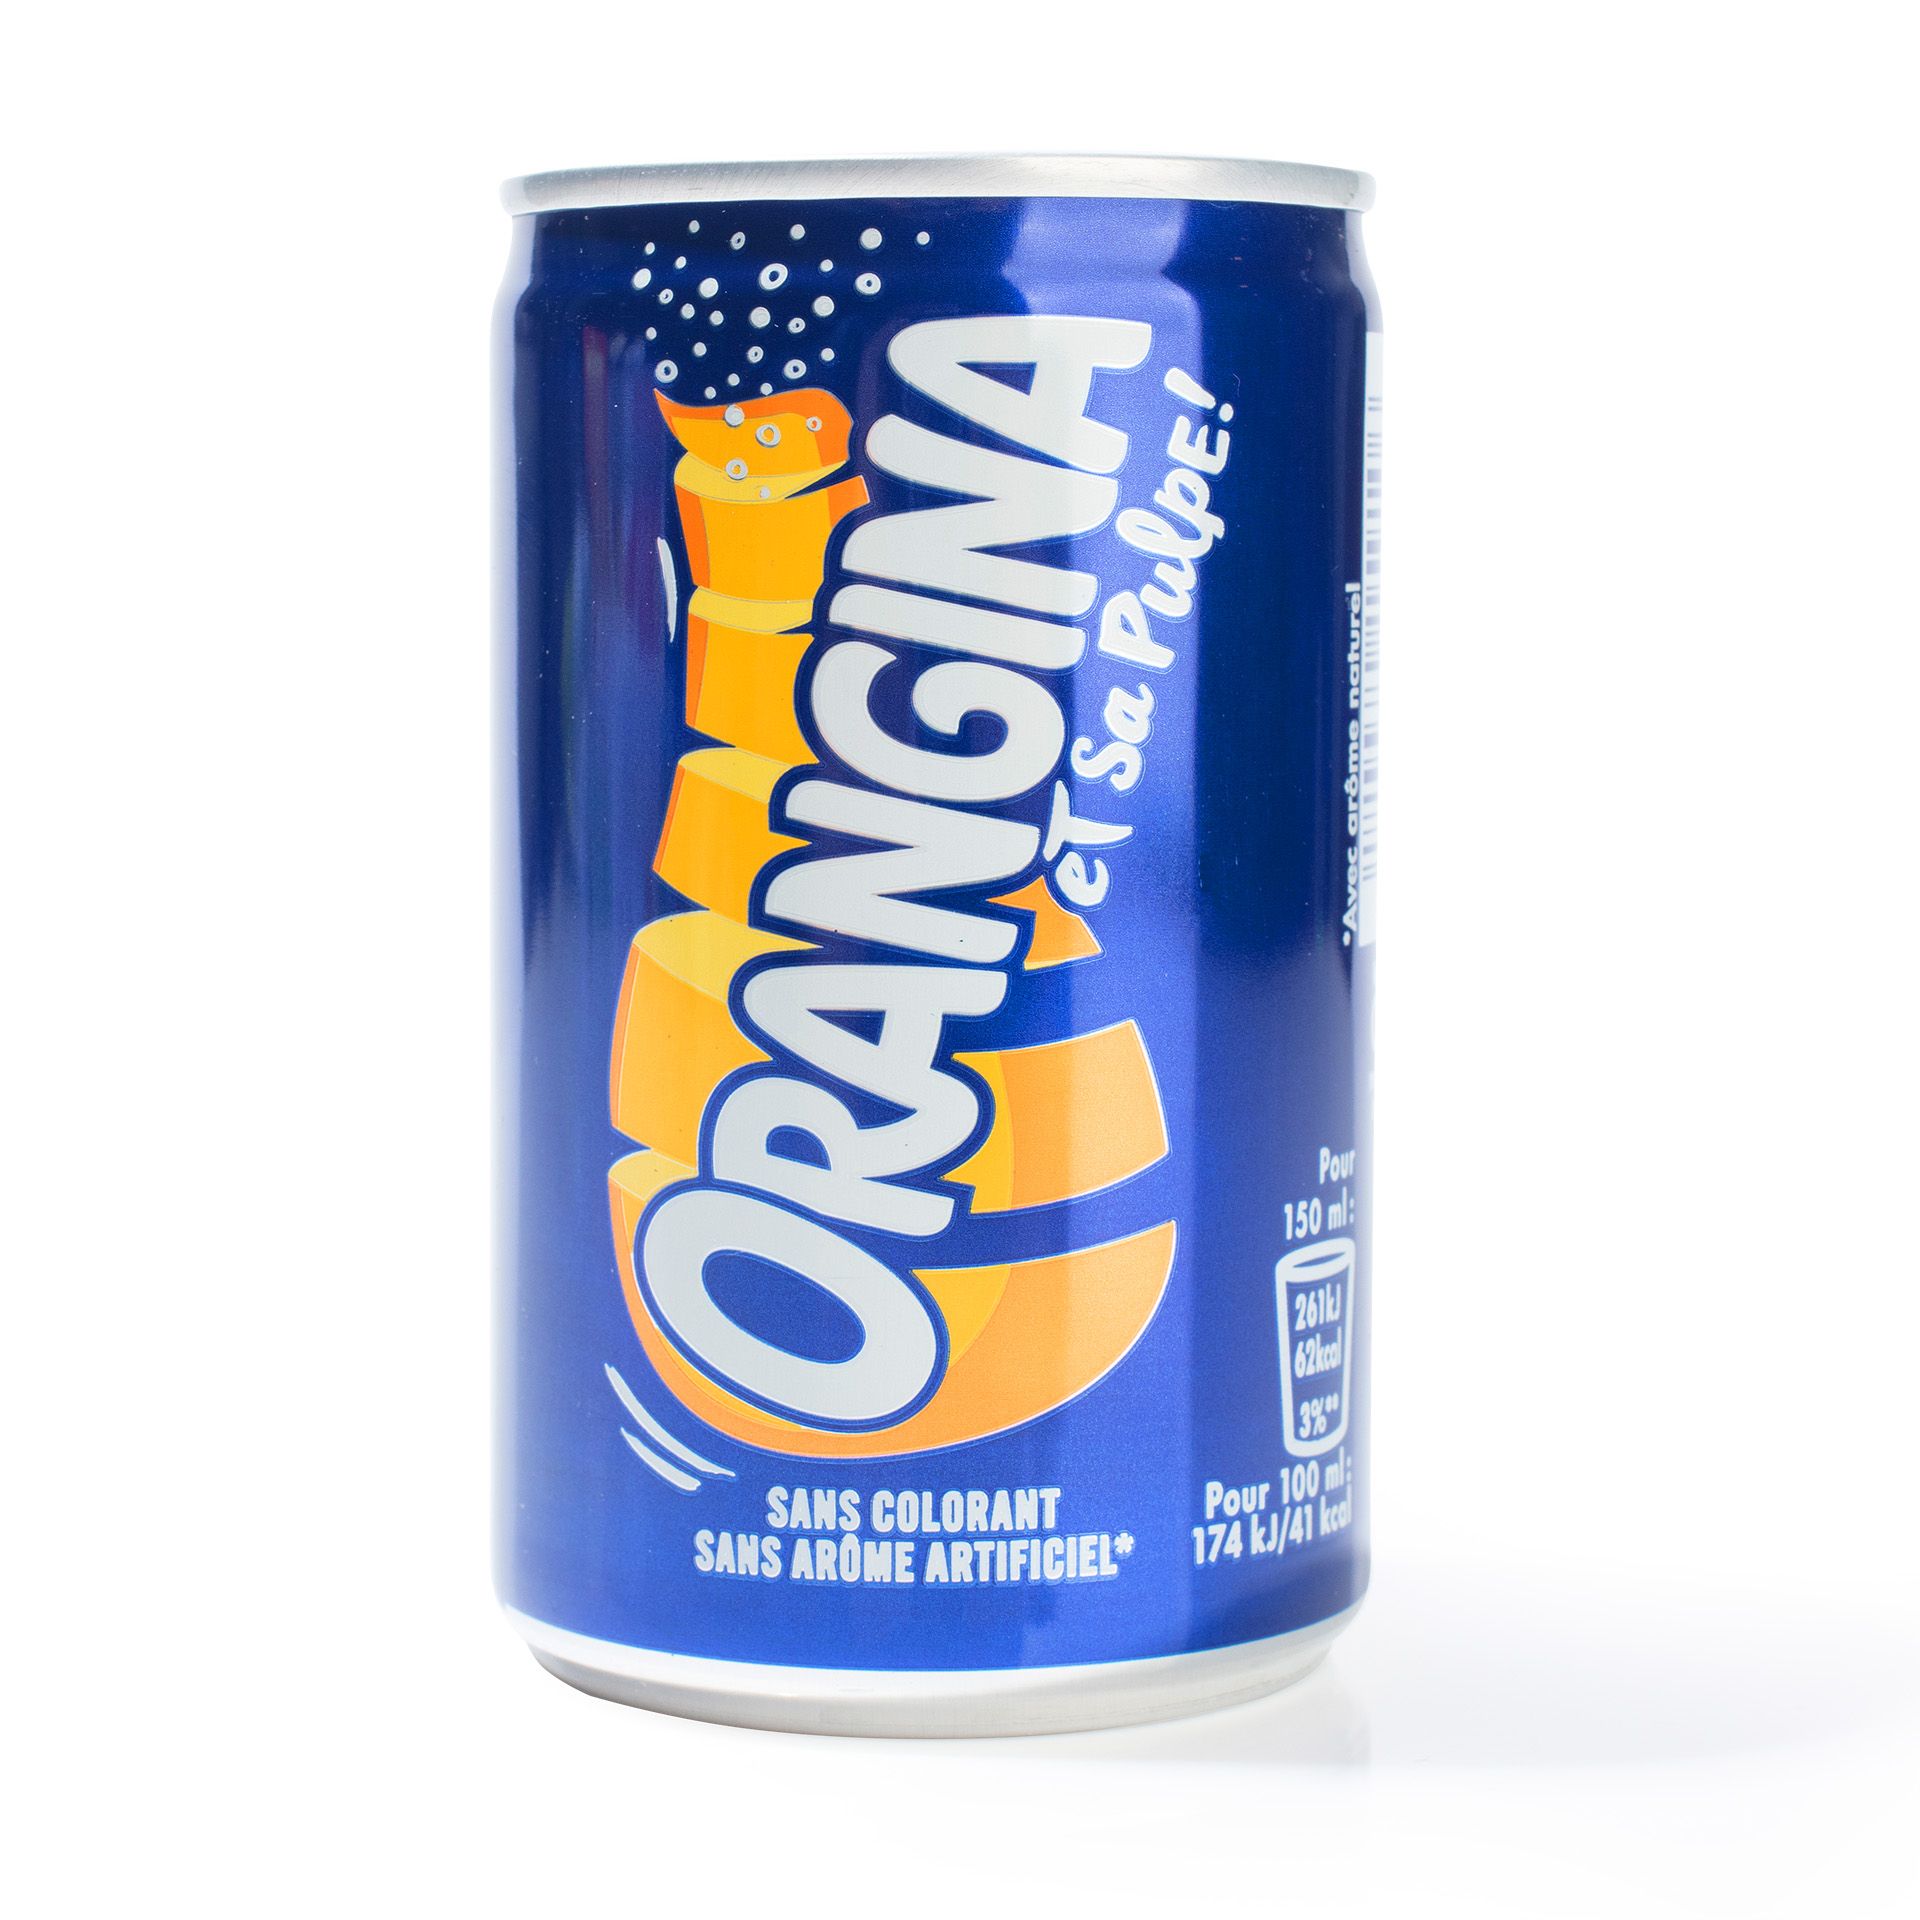 Orangina - Orangina, Sparkling Citrus Beverage, with Natural Pulp